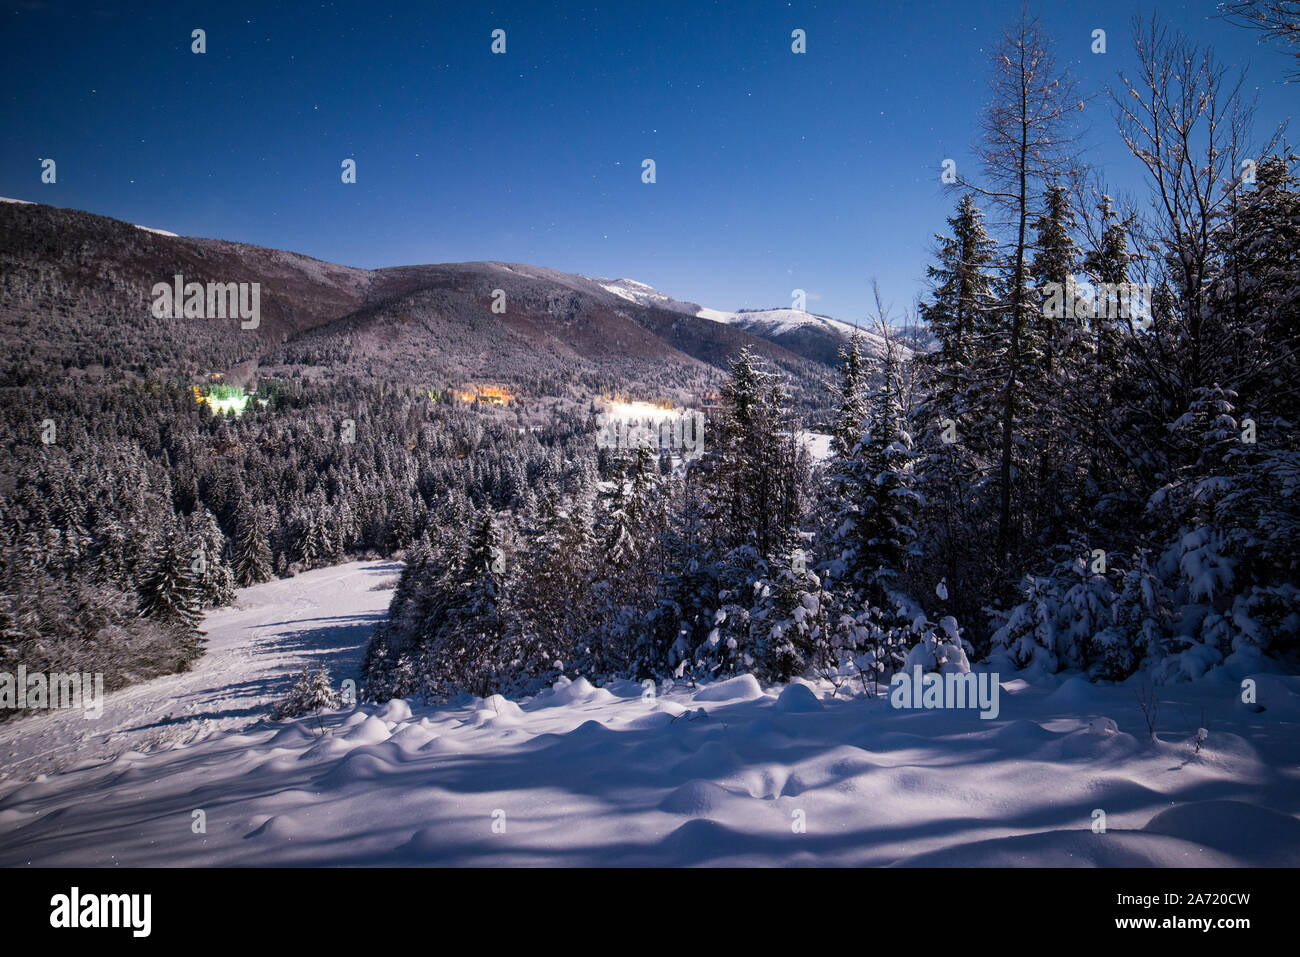 Notte stellata, tempo di Natale, invernale da favola in Slovacchia centrale, Europa Foto Stock